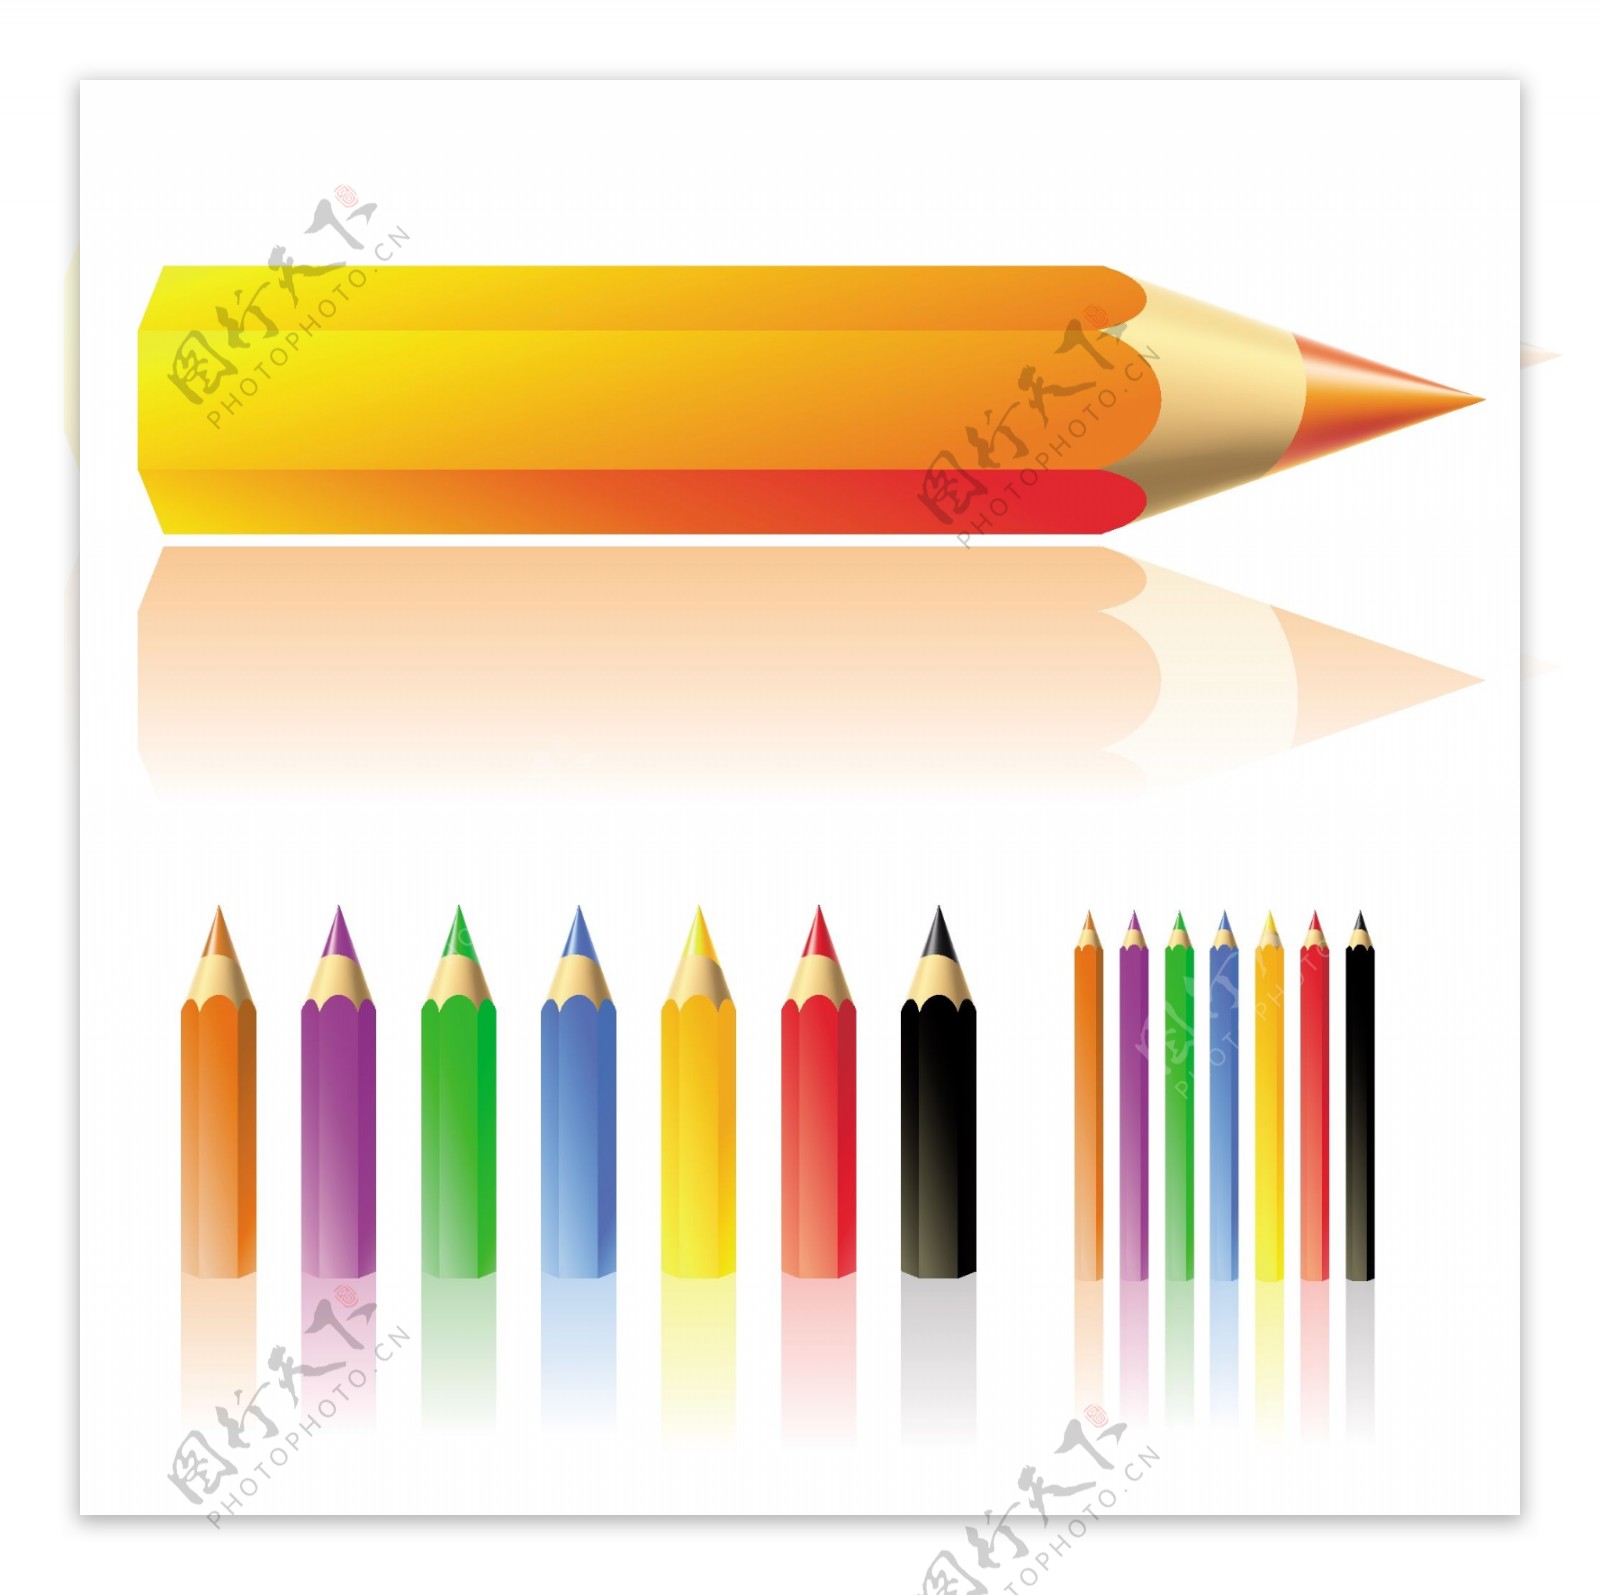 大量的彩色铅笔